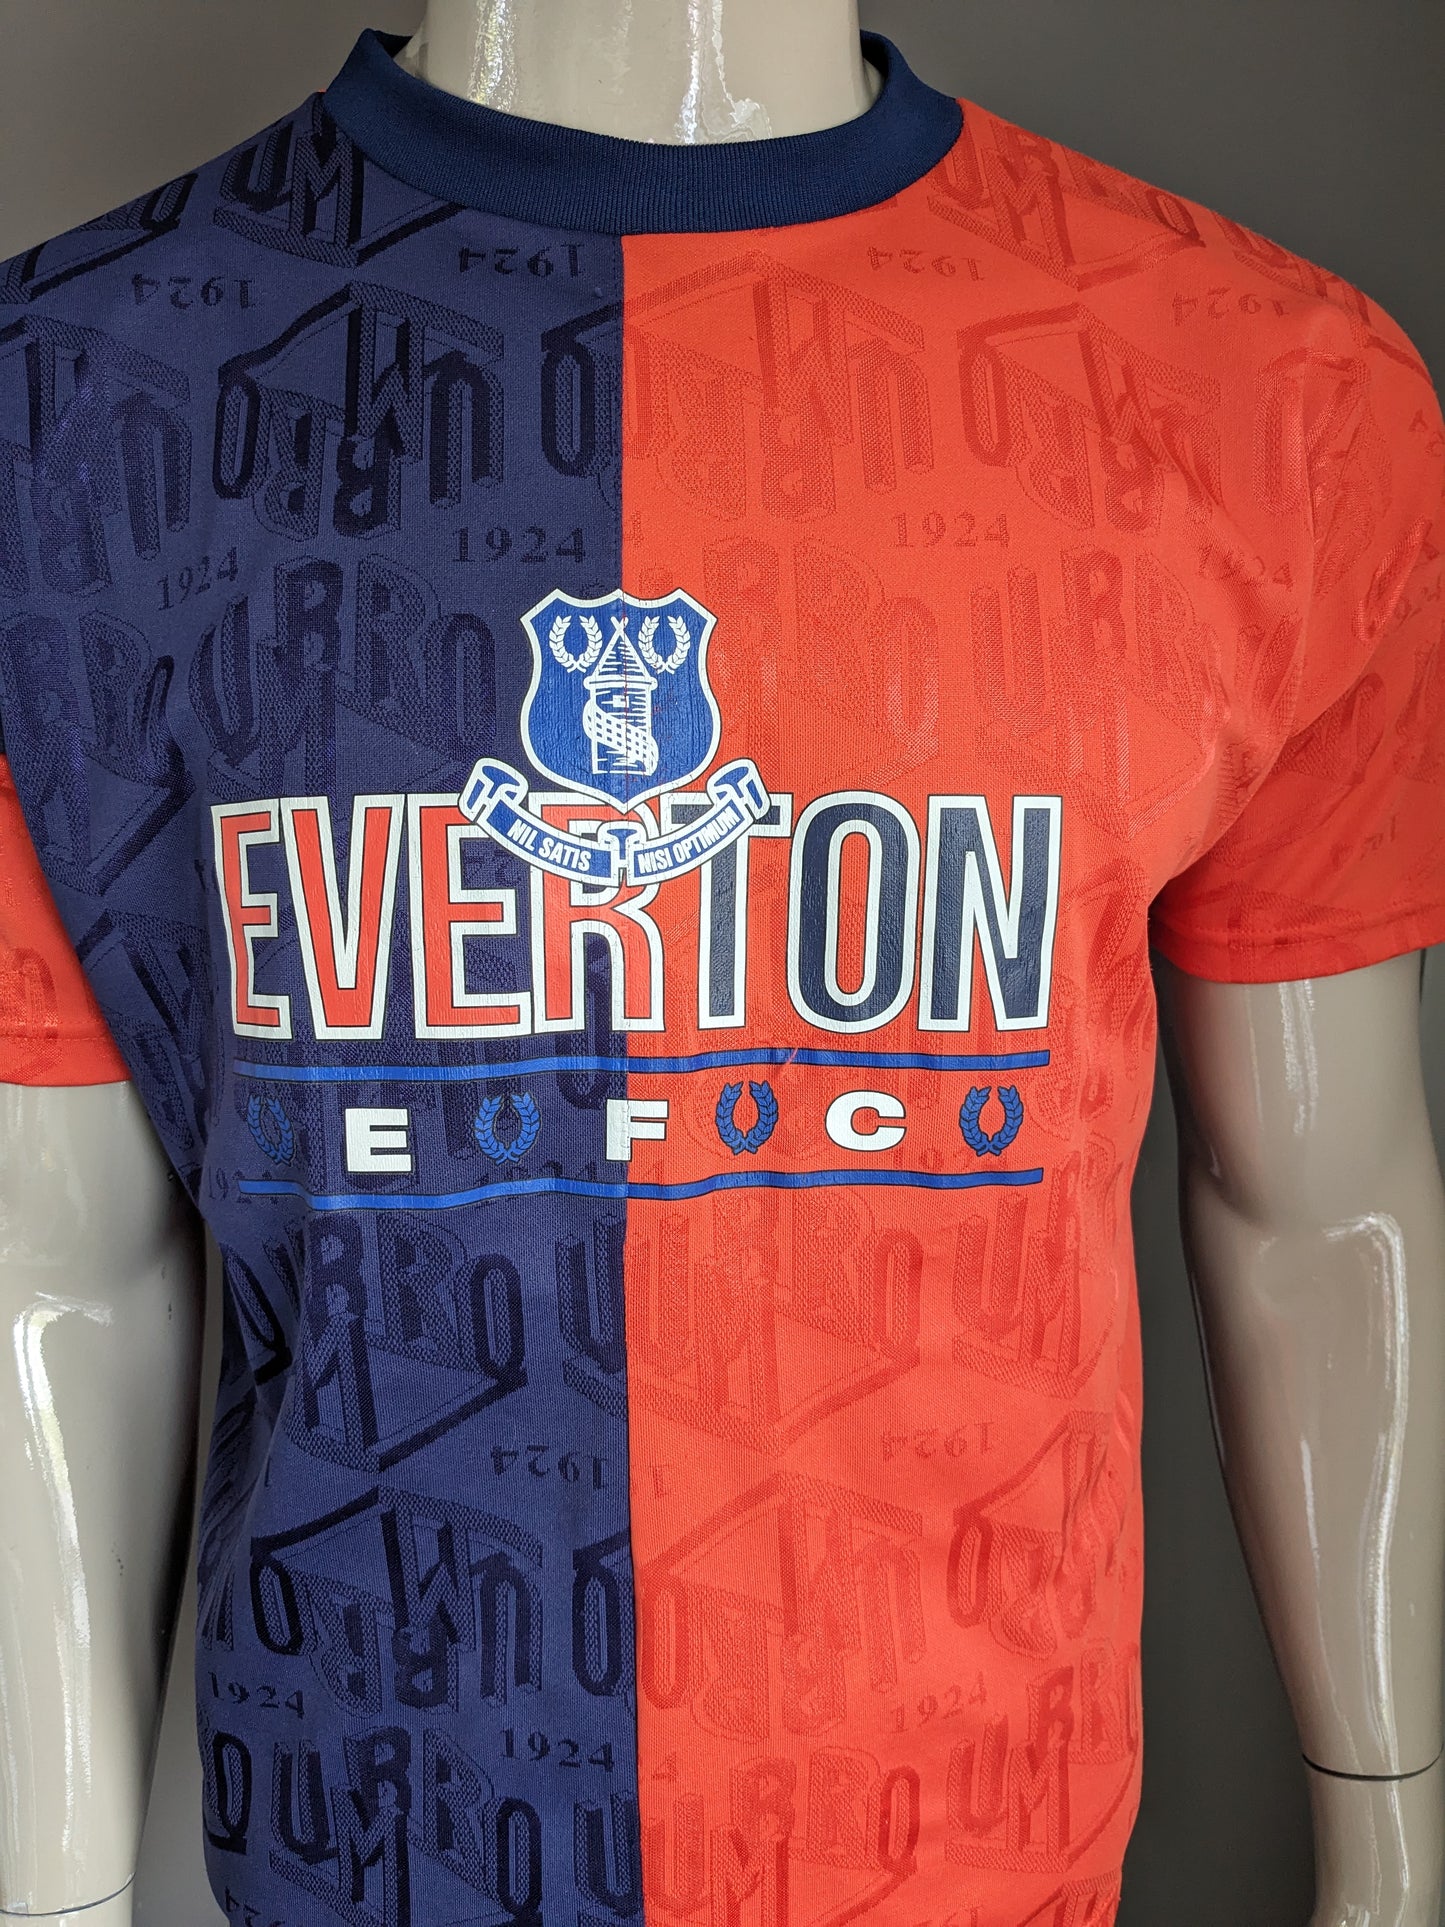 Chemise de sport Umbro Everton vintage. Motif de couleur orange bleu. Taille (s) / L.